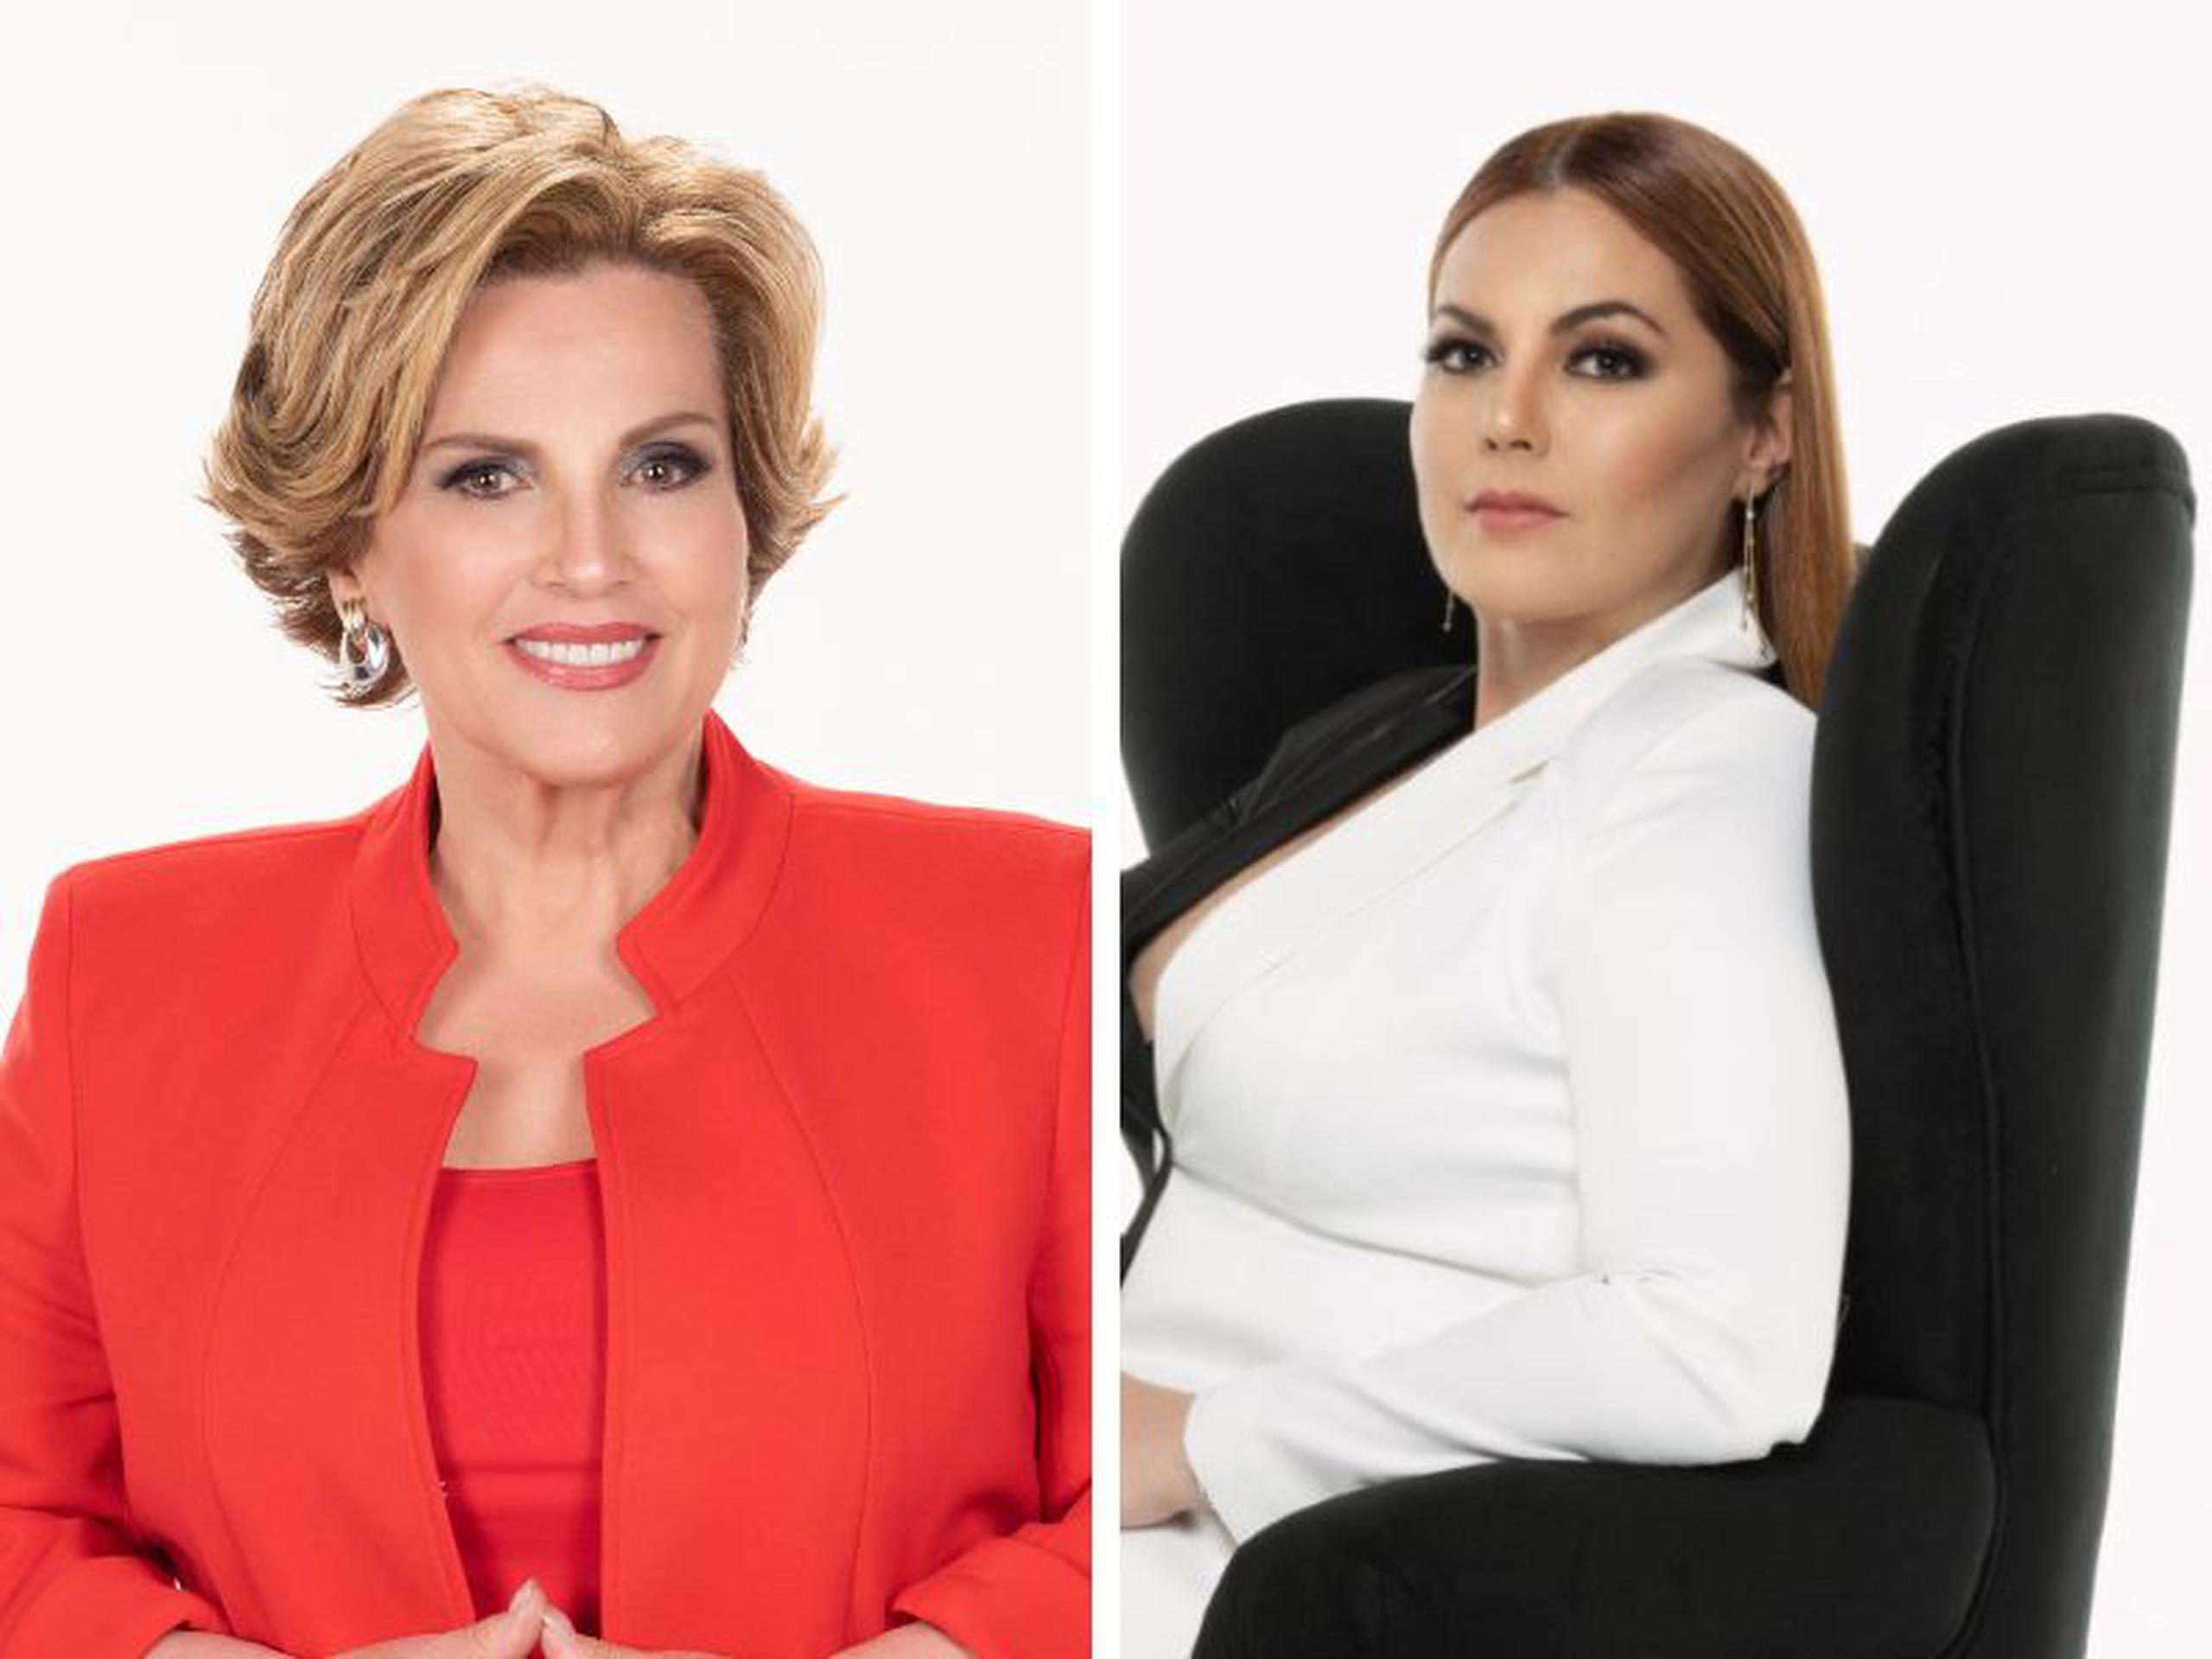 Carmen Jovet y Veronique Abreu Tañón son los rostros de nuevas producciones locales en ABC Puerto Rico.